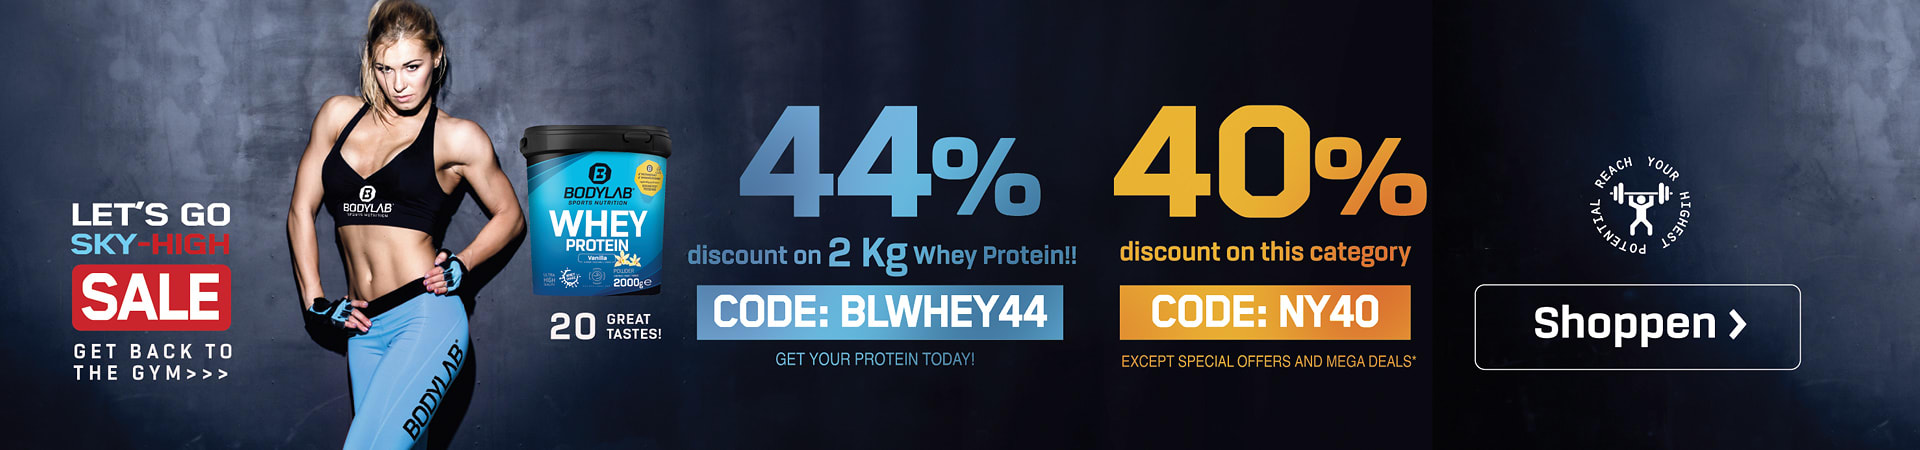 blauwe banner met een vrouwelijke atleet en een verwijzing naar de twee aanbiedingen met 44% korting op whey 2kg en tot 40% korting op Bodylab-producten